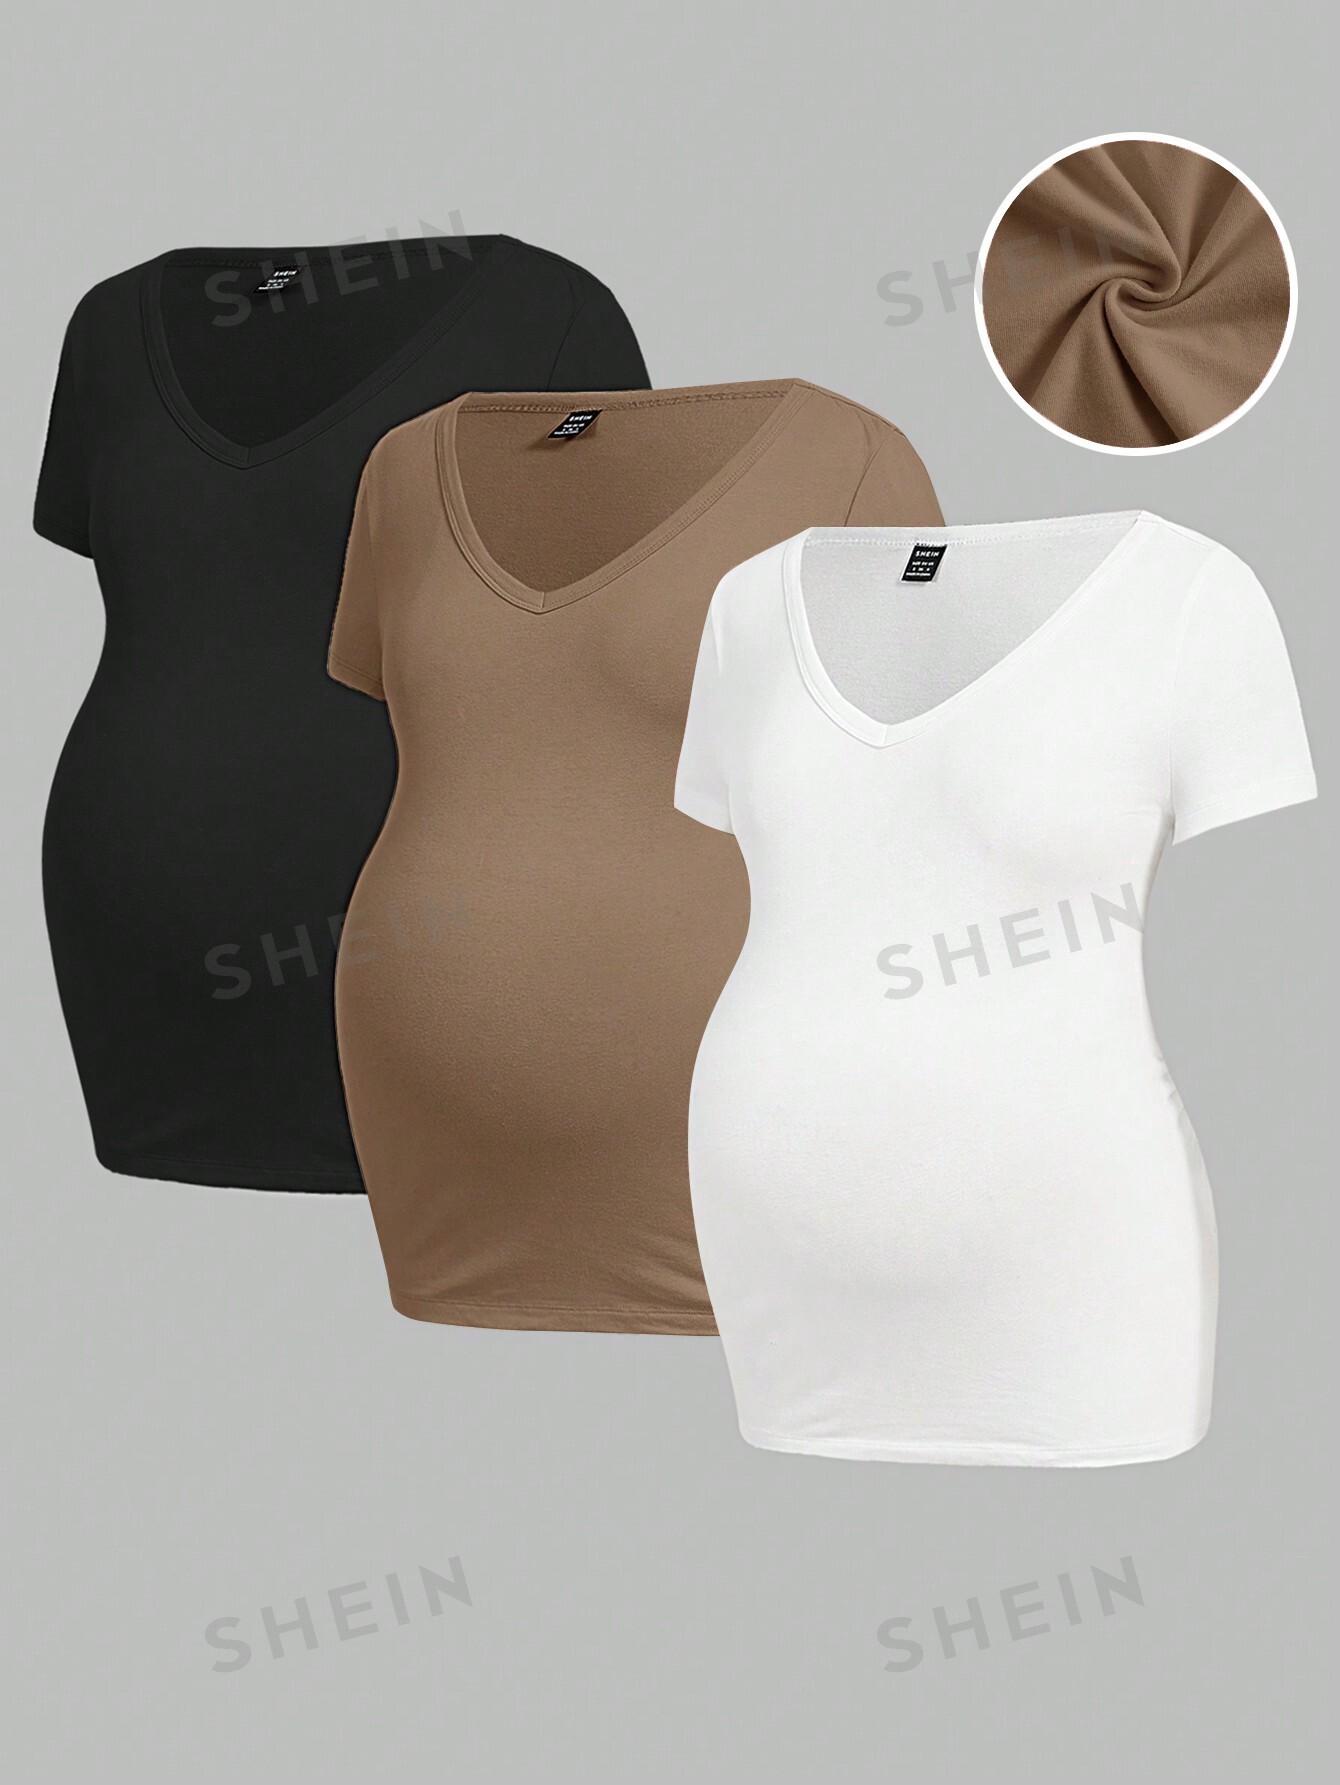 shein yoga базовая однотонная спортивная одежда приталенного кроя темно серый SHEIN Однотонная футболка для беременных с v-образным вырезом, хаки